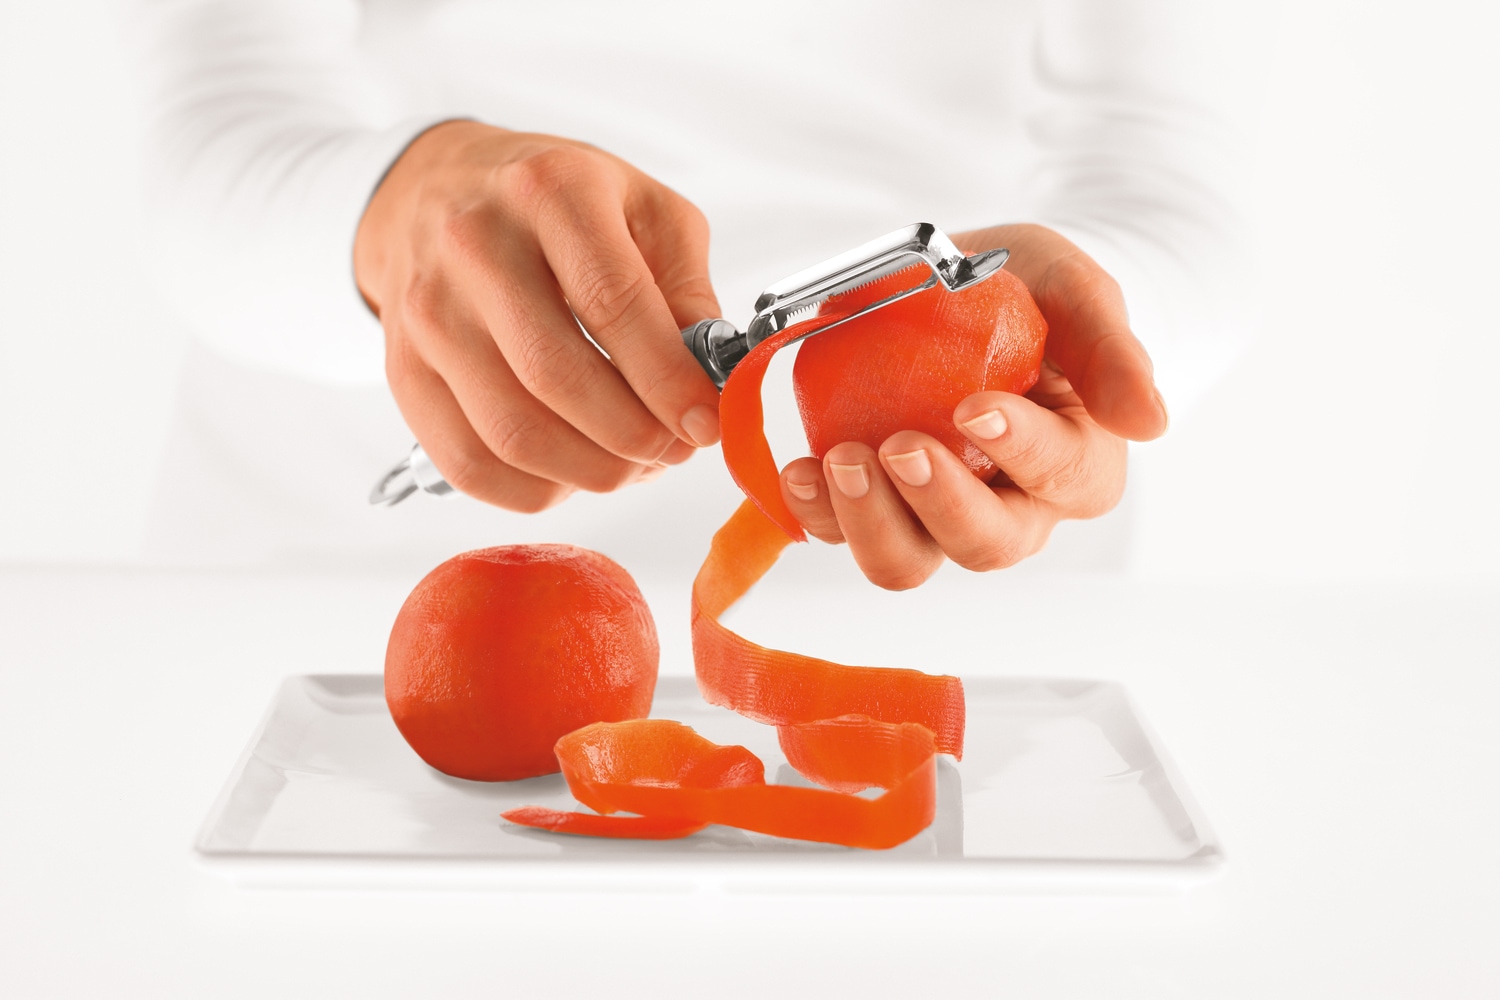 RÖSLE Sparschäler, Tomaten- und Kiwischäler kaufen Strunkentferner, | mit 18/10 Edelstahl BAUR